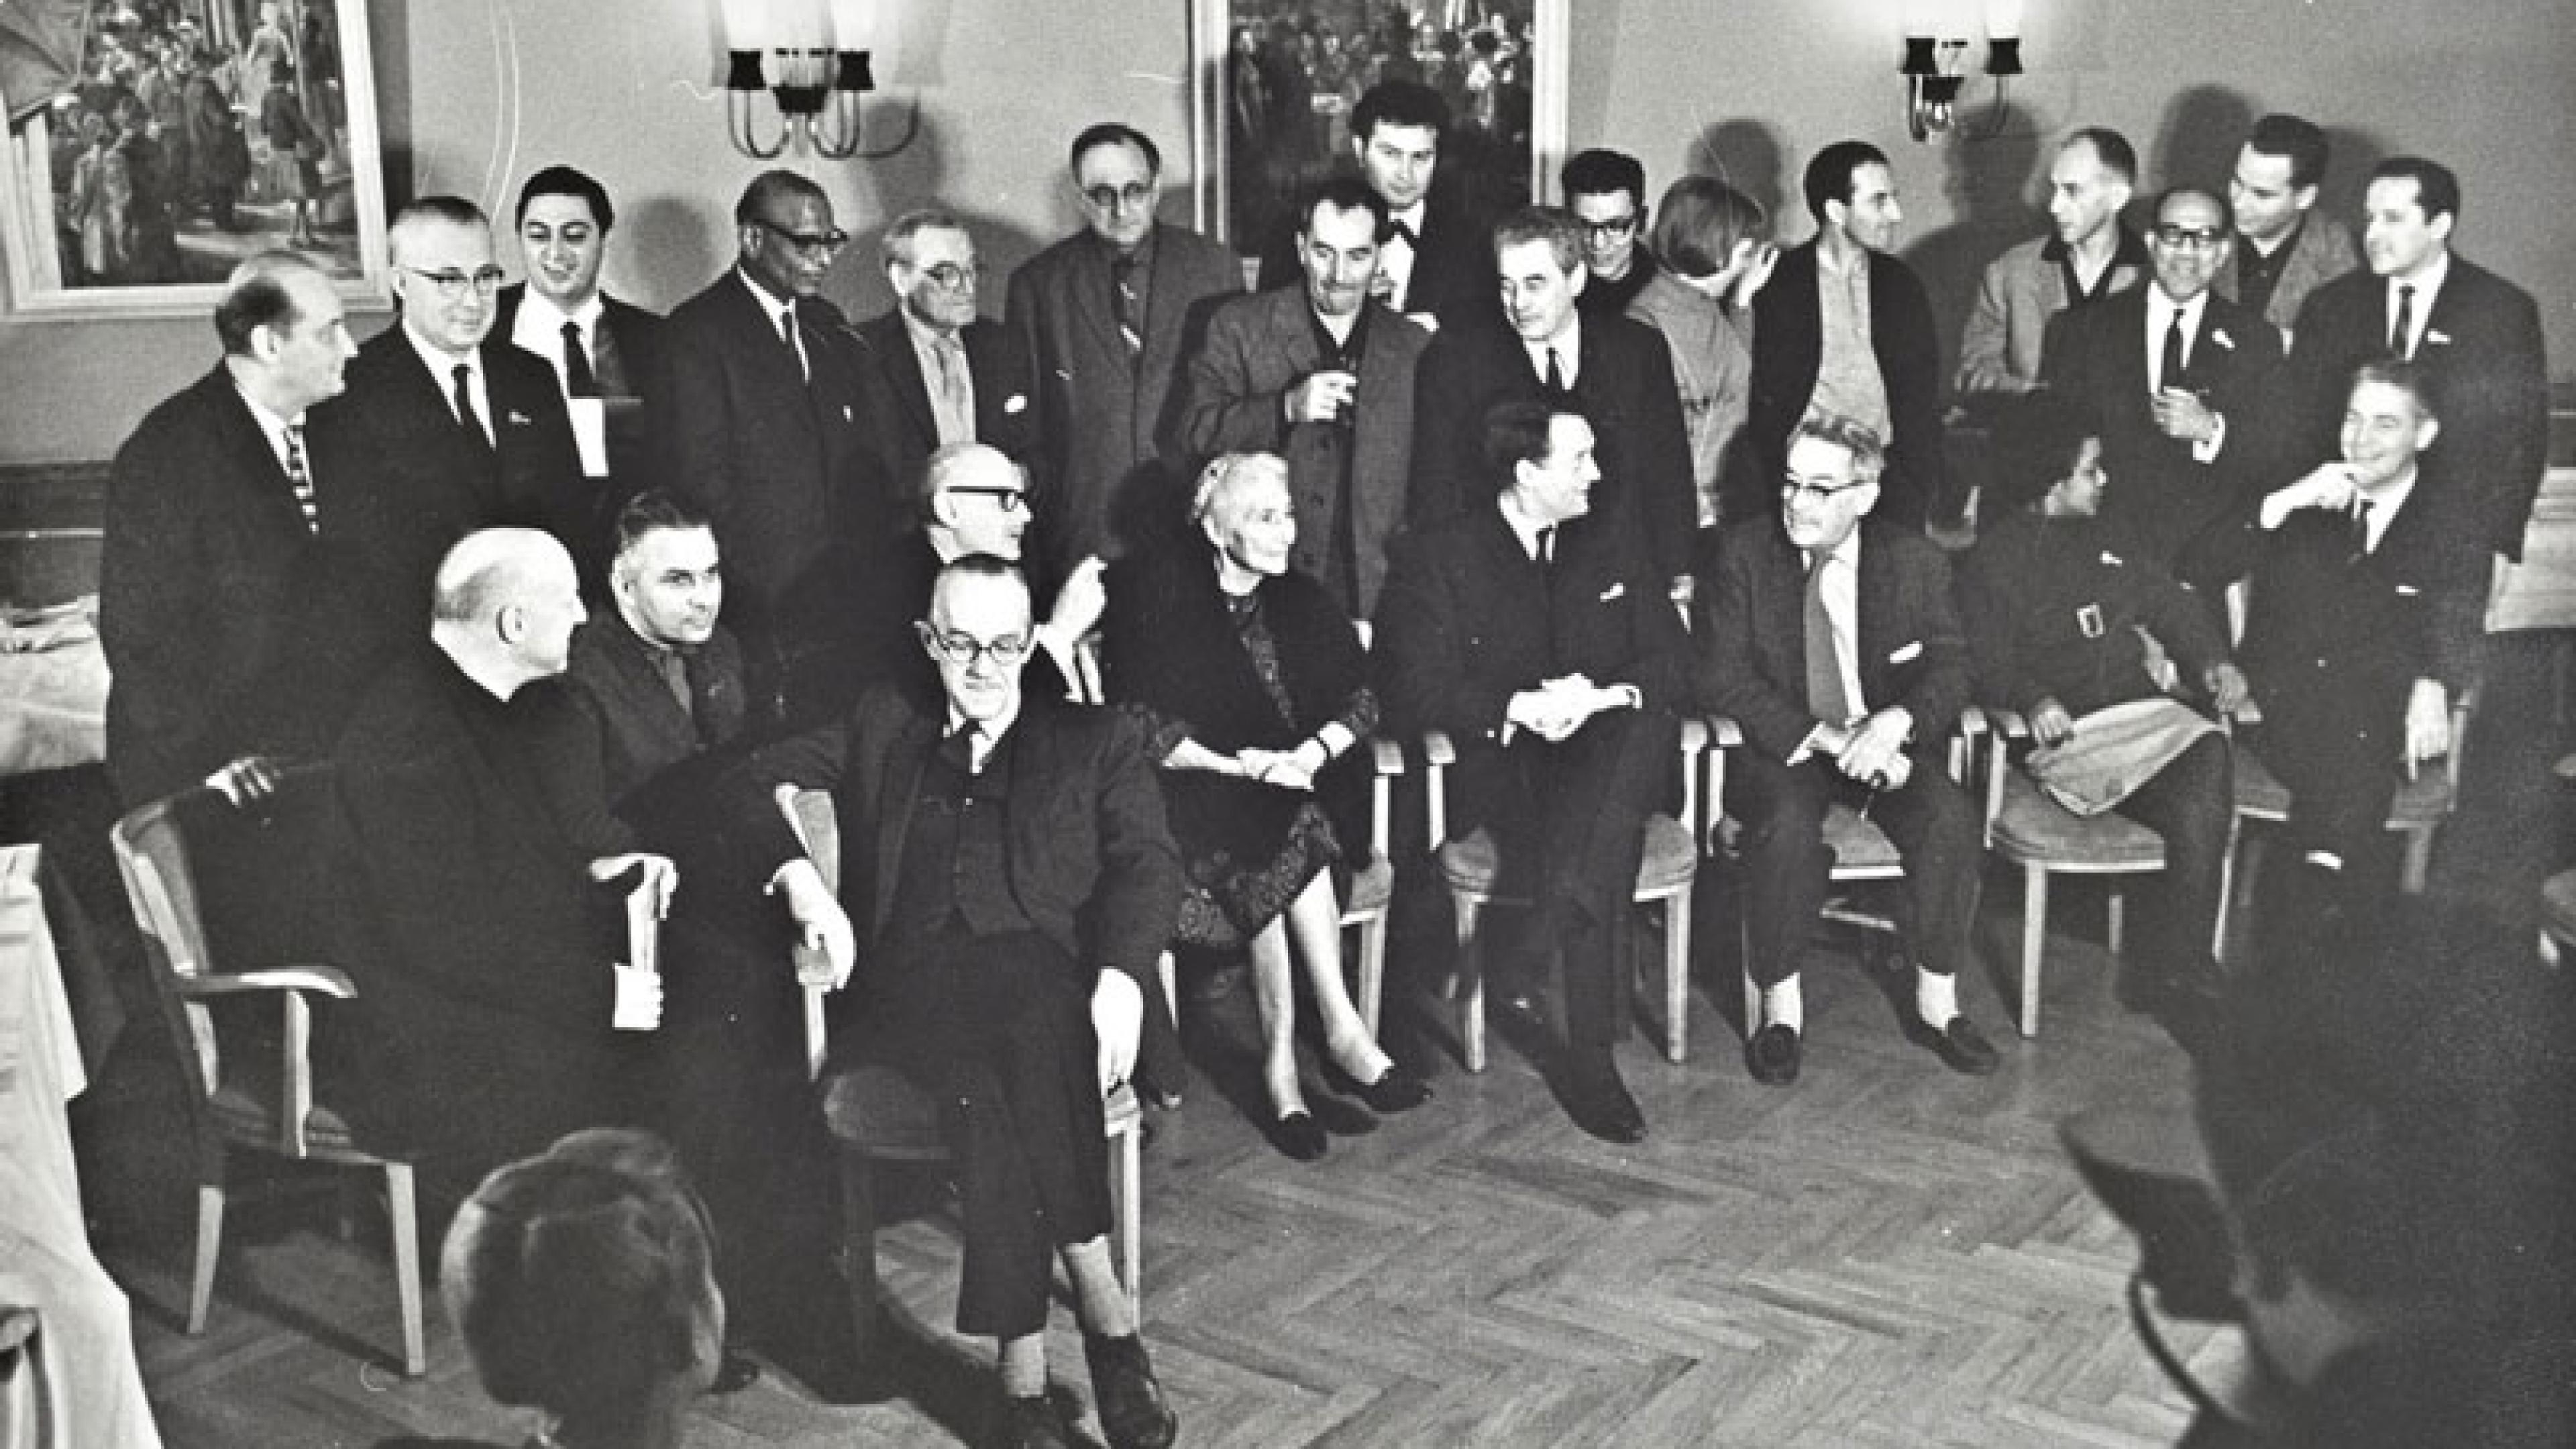 Rund zwei Dutzend Personen in zwei Reihen (vorne sitzend, dahinter stehend) bei einer Pressekonferenz.